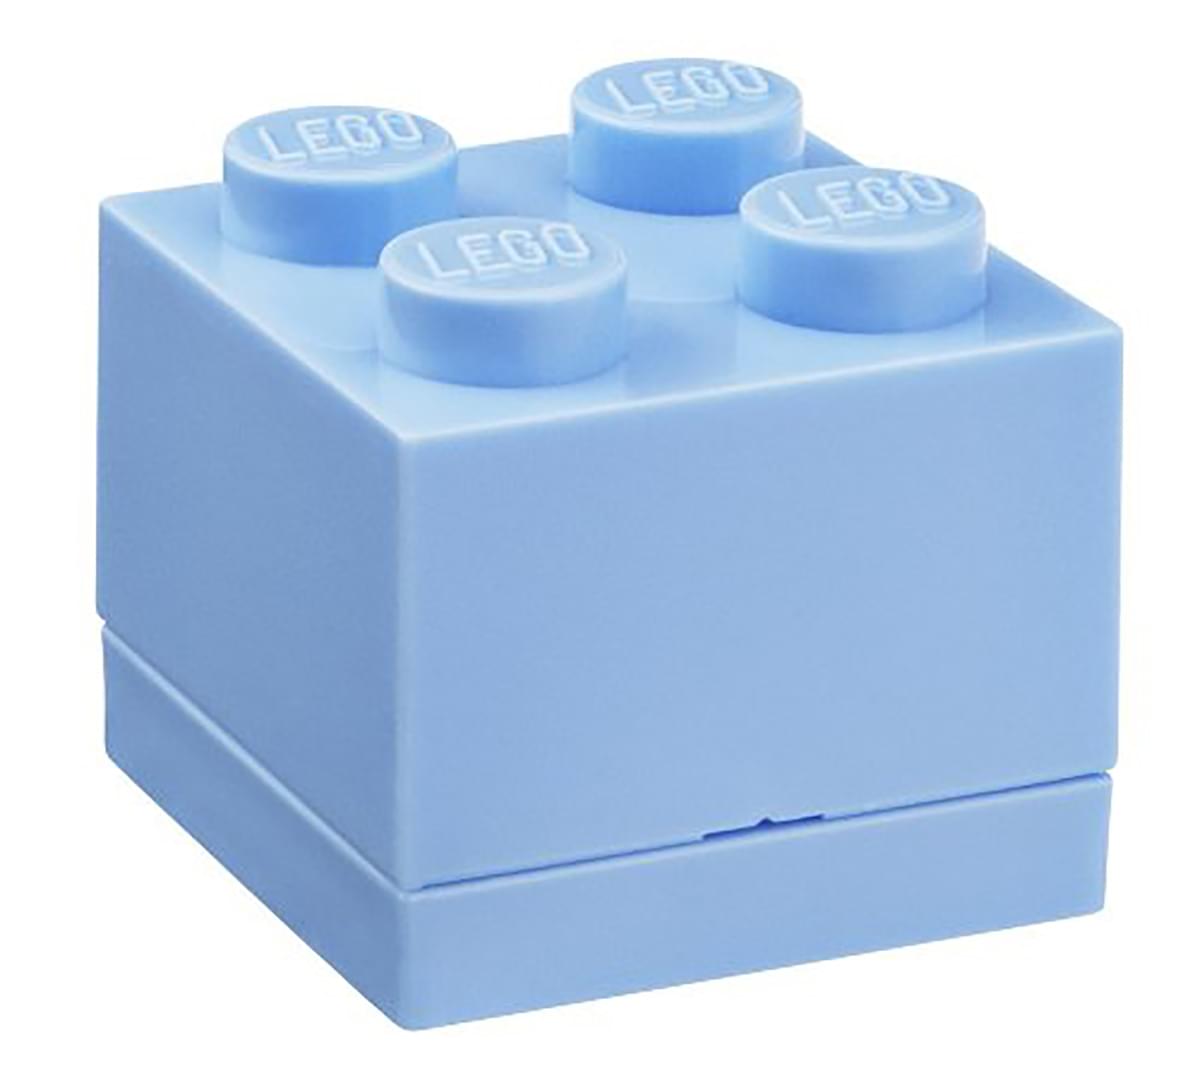 LEGO Mini Box 4, Light Blue